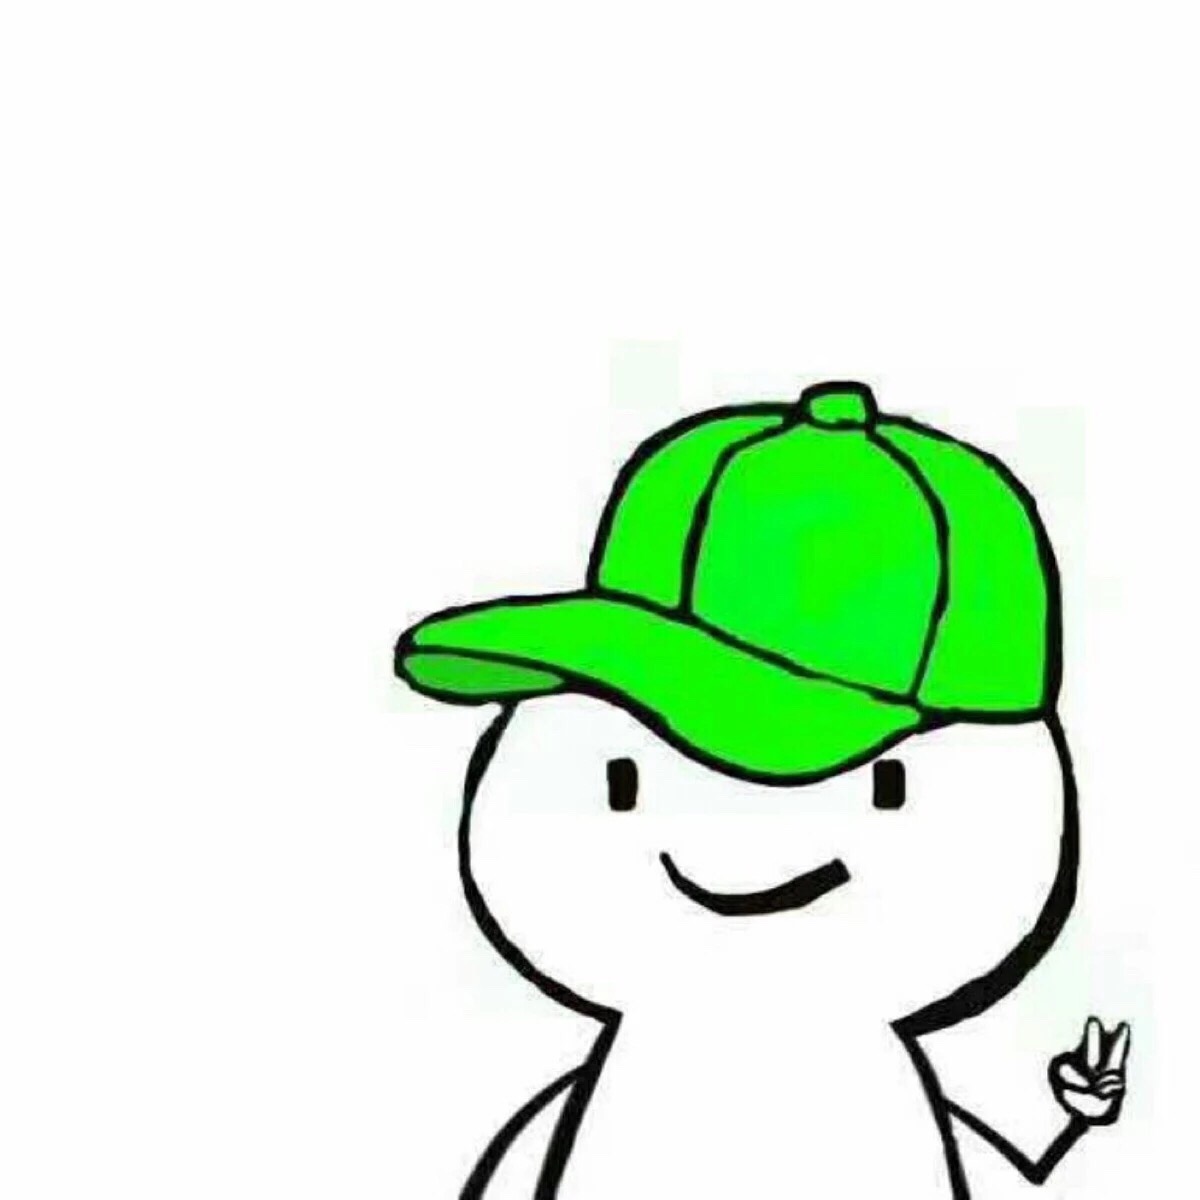 绿帽子节 | 每到三月，美国人都爱戴绿帽 - 马蜂窝